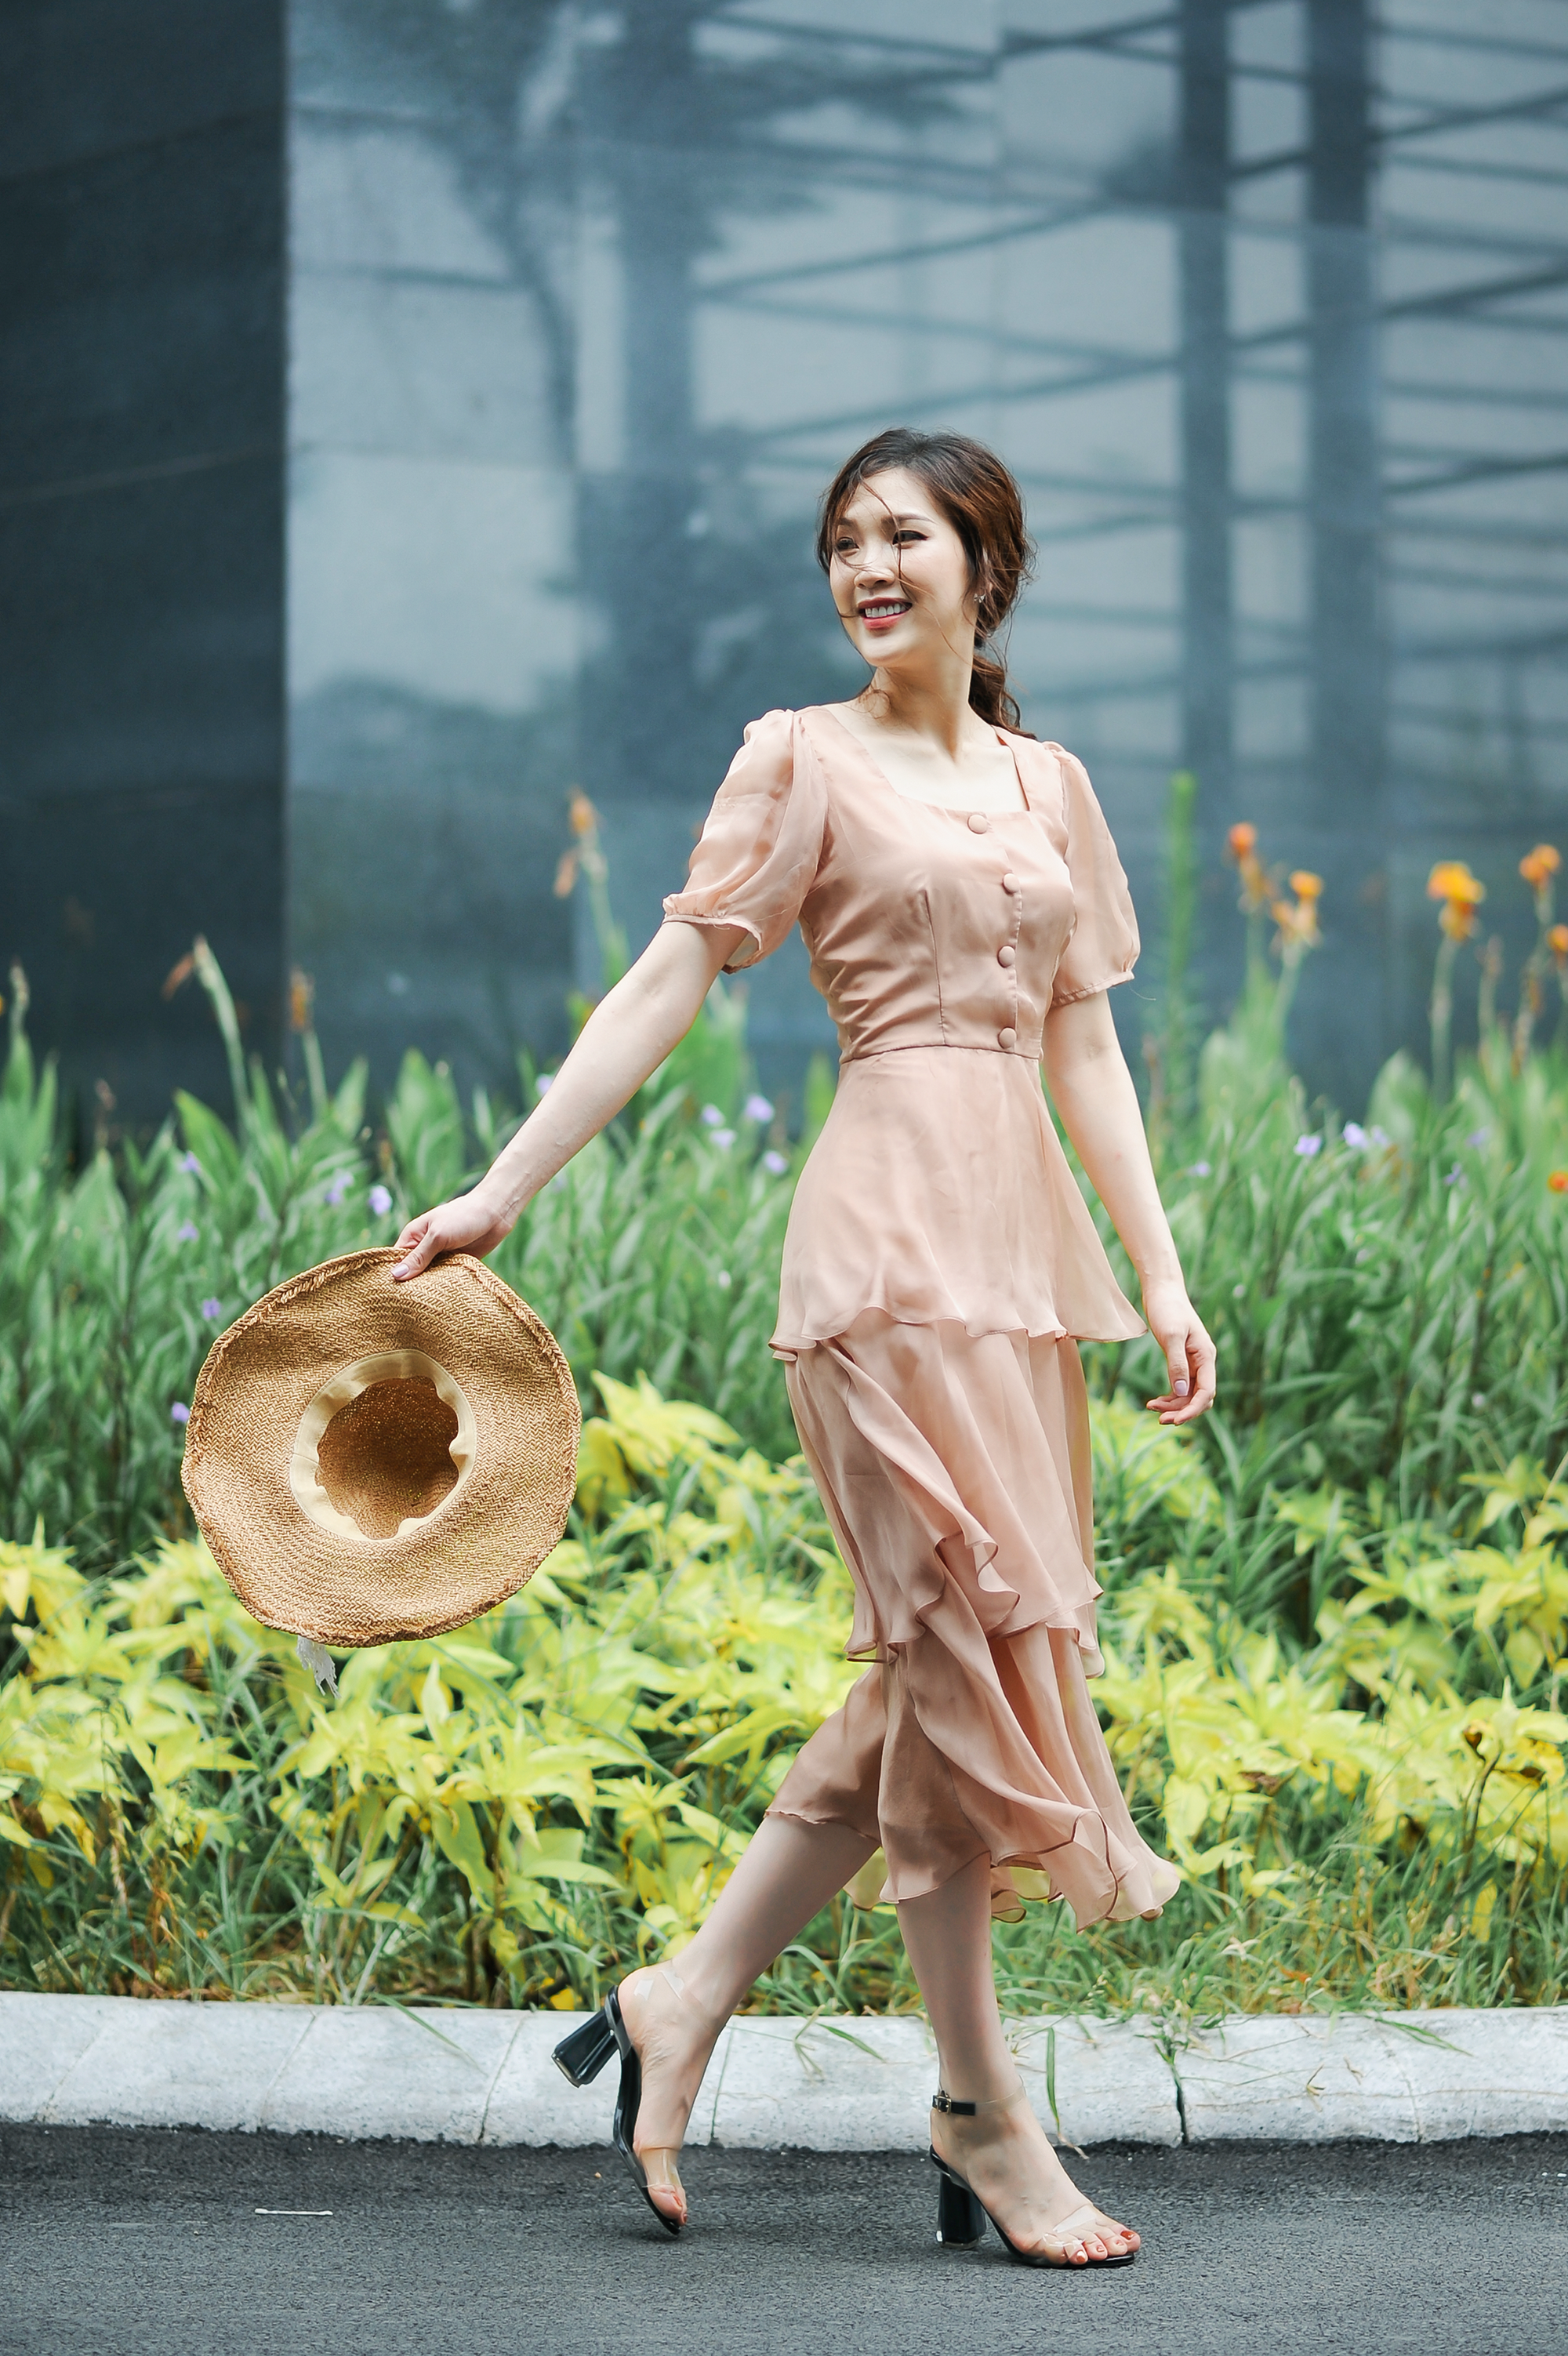 Dọa bị sảy thai, từng bị băng huyết, Hoa hậu Phí Thùy Linh vẫn ước ao sinh thêm con - Ảnh 3.